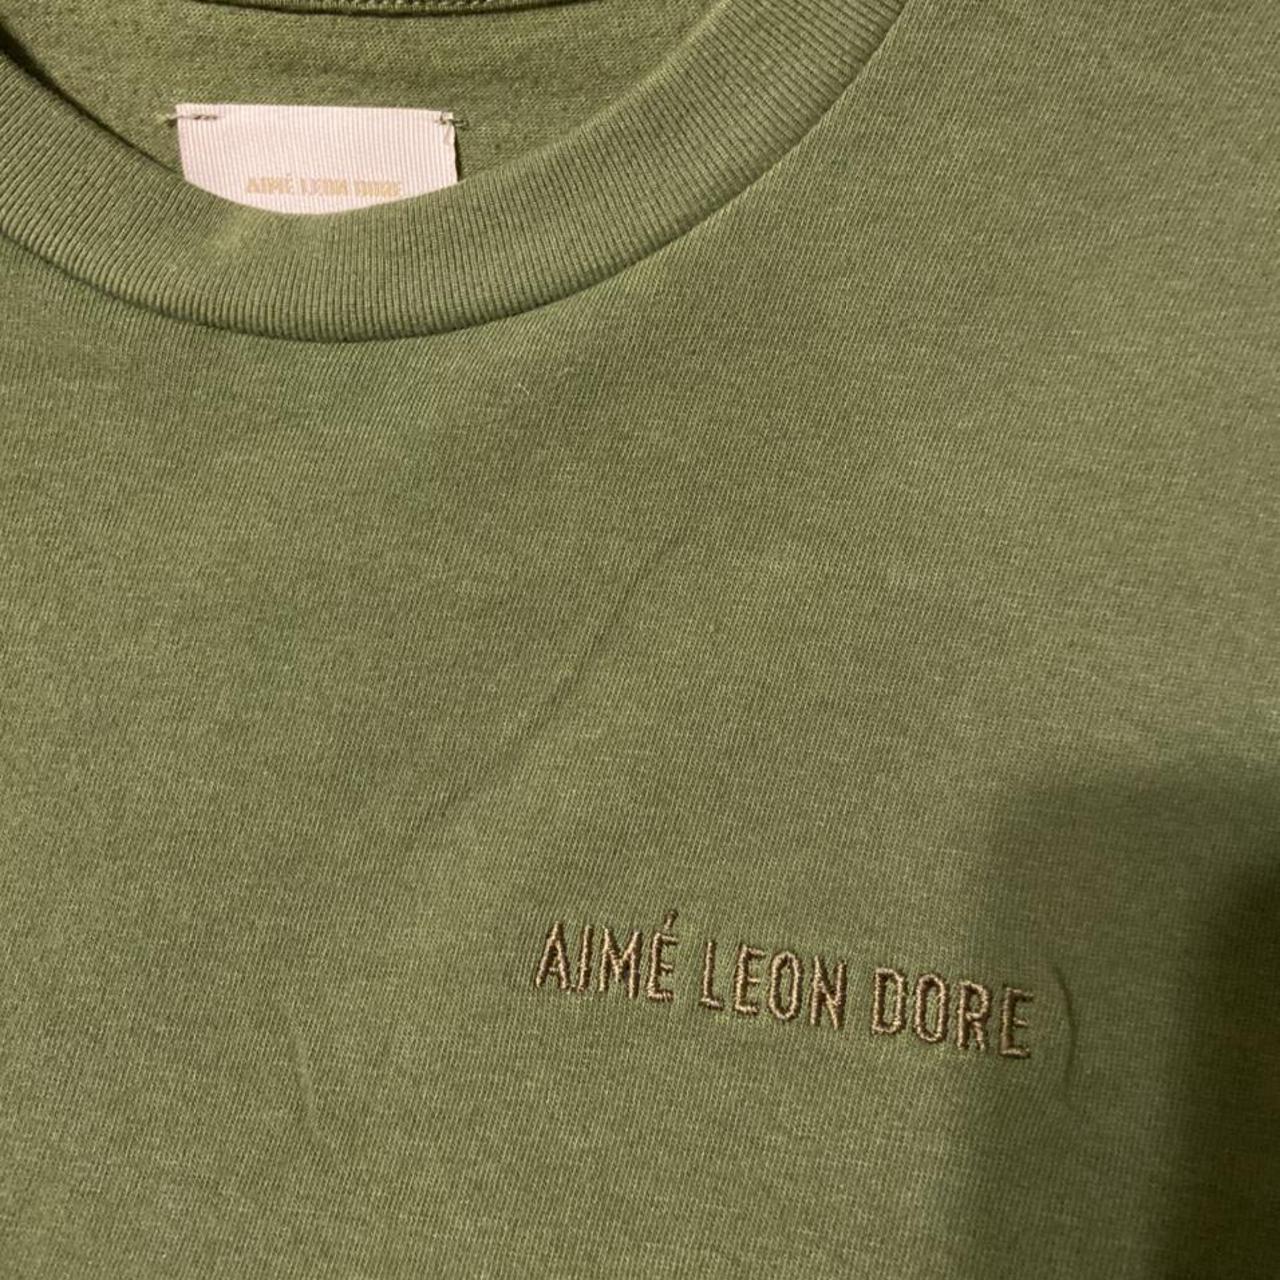 Aime Leon dore unisphere T-shirt Excellent - Depop